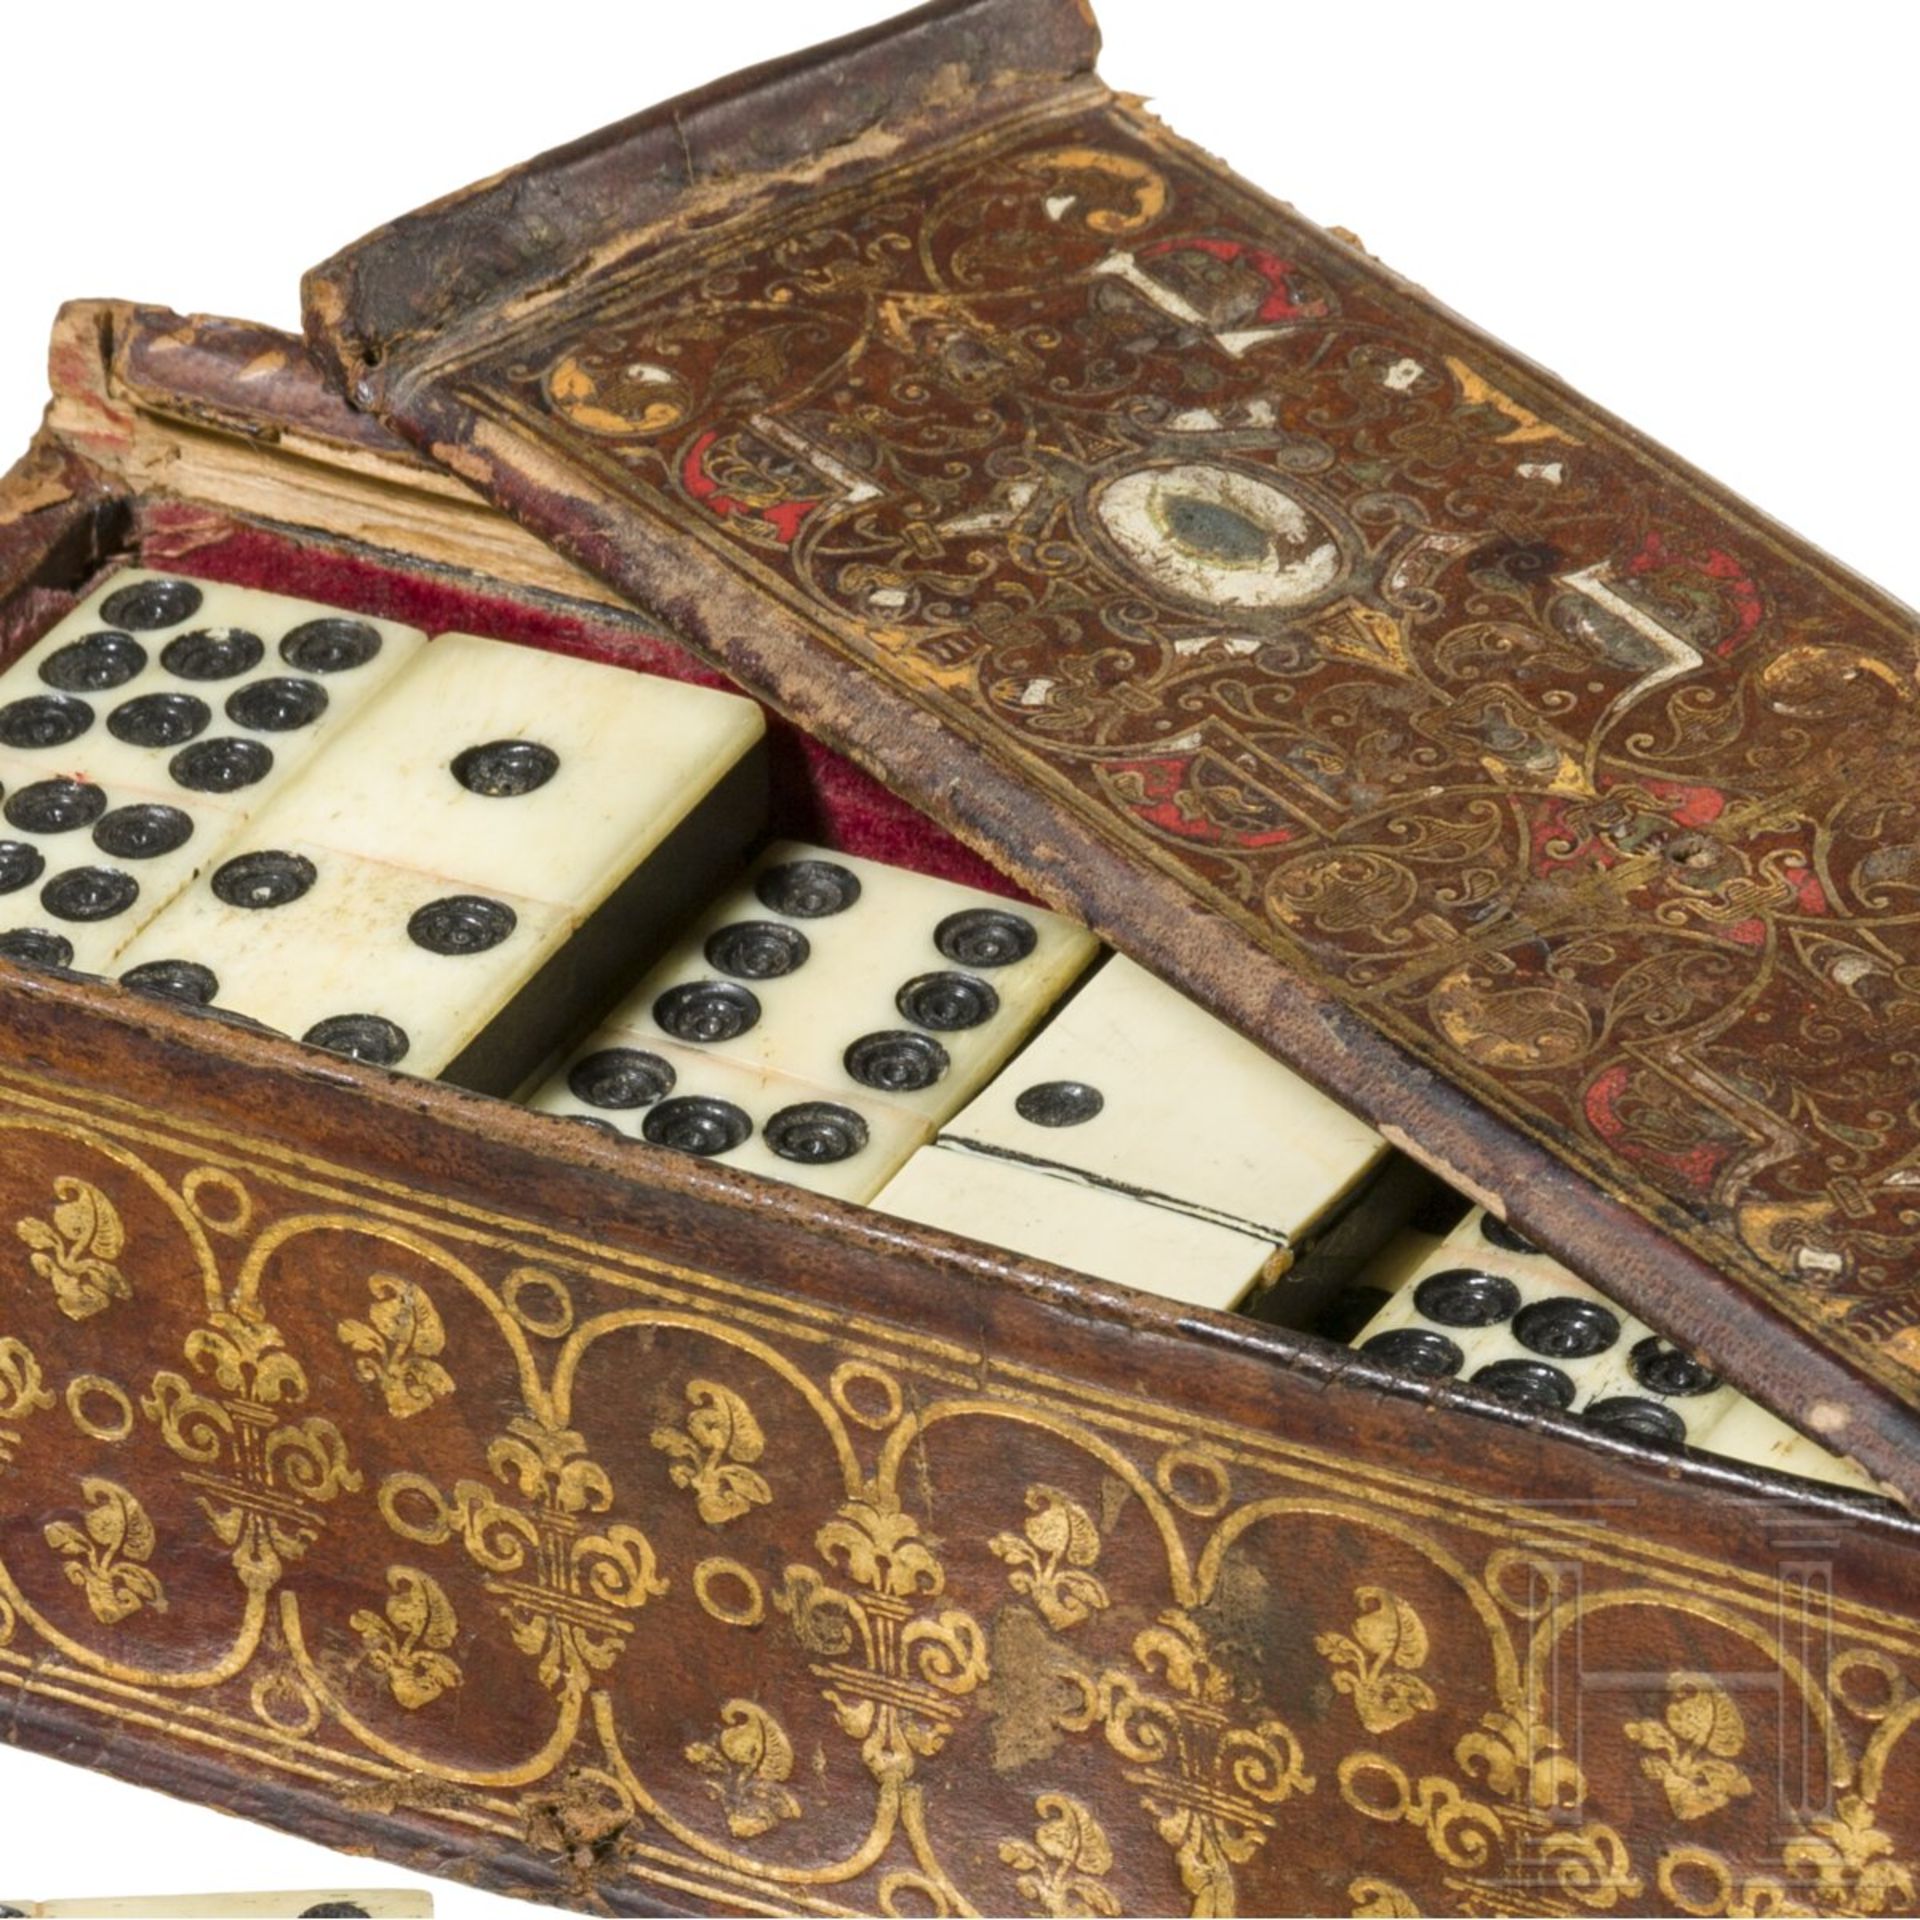 Barockes Dominospiel in goldgeprägter Lederkassette, deutsch, Mitte 18. Jhdt. - Bild 4 aus 4